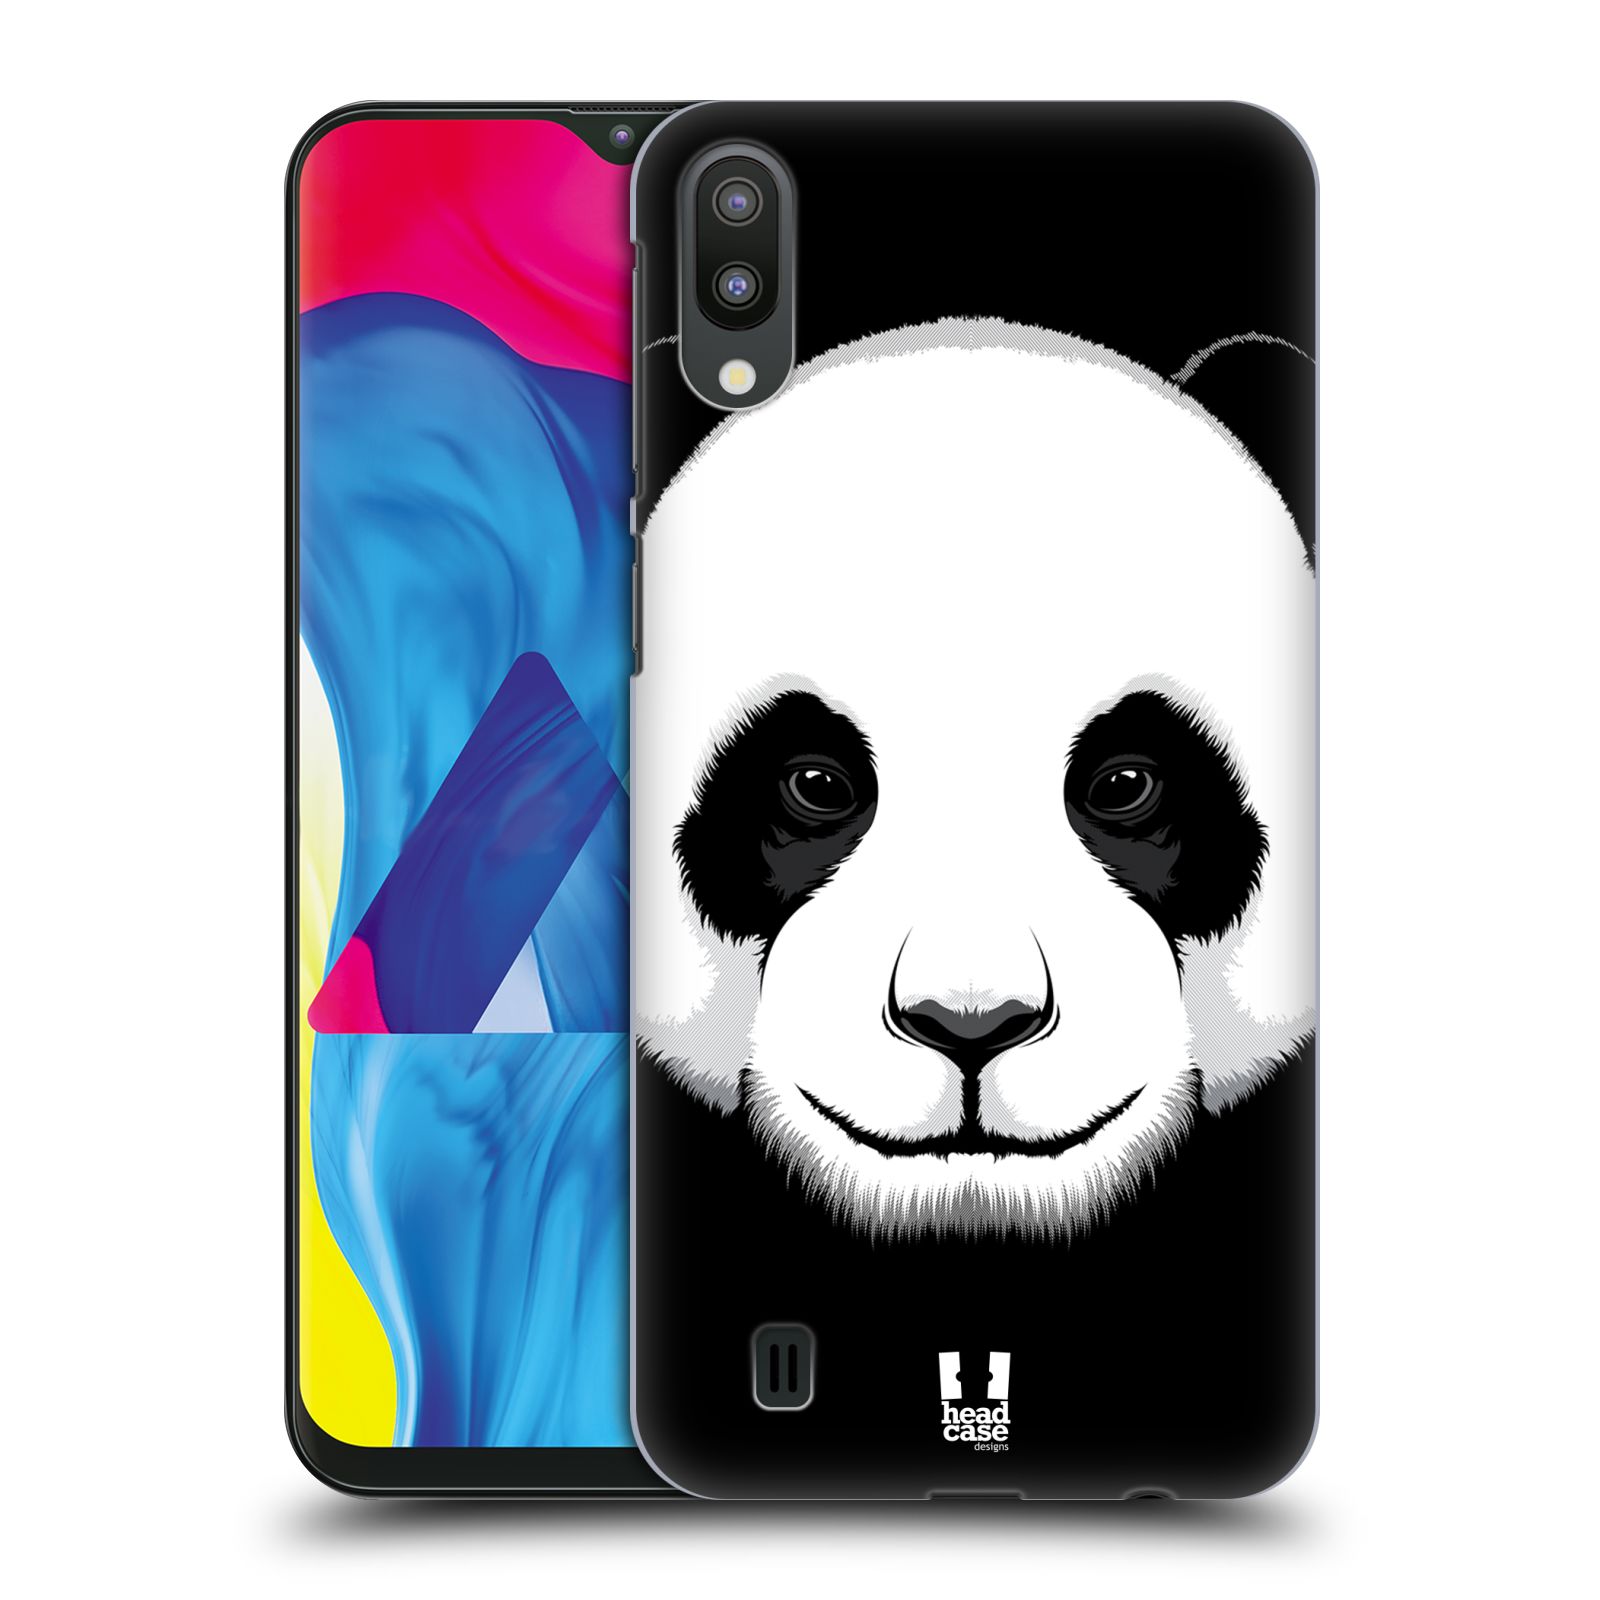 Plastový obal HEAD CASE na mobil Samsung Galaxy M10 vzor Zvíře kreslená tvář panda